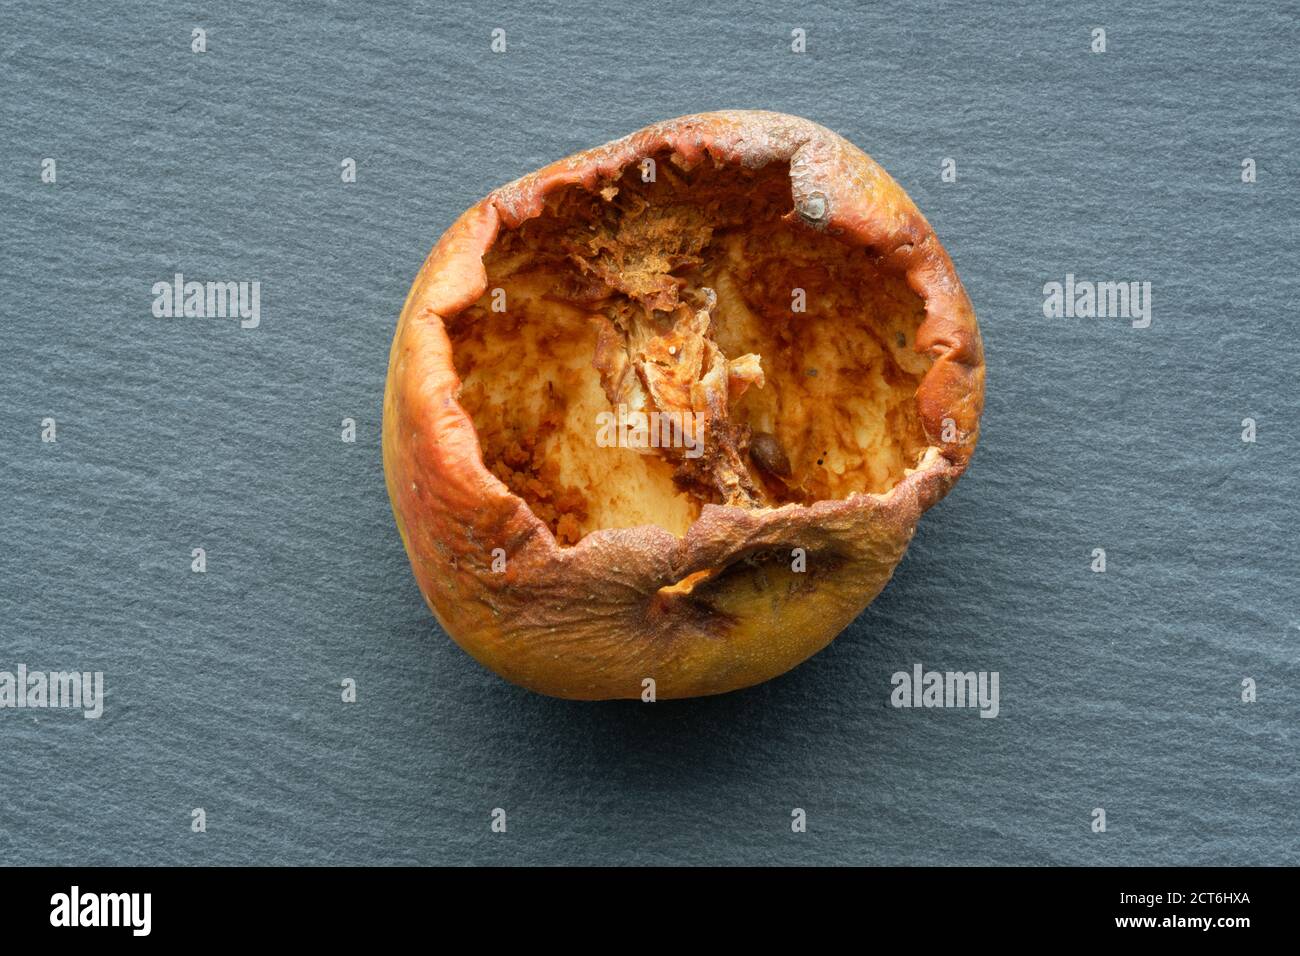 Ein Apfel, der von Insekten bis in den Kern gefressen wird. Ein Studiobild eines gepflückten Apfels, der vom Insektenleben verwüstet wurde. Das Einstiegsloch ist oben zu sehen. Stockfoto